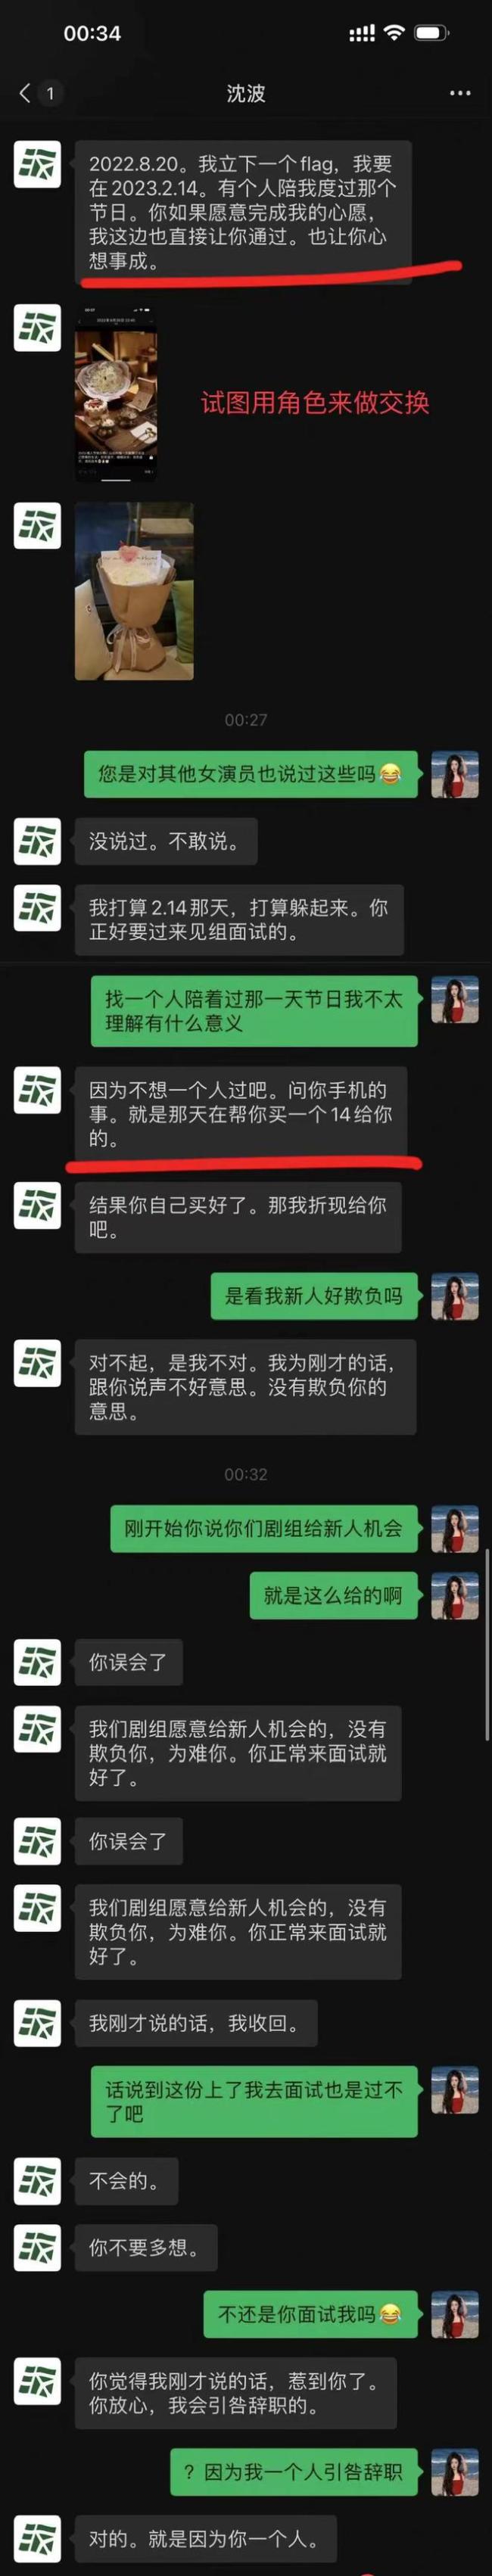 李恩曝导演性骚扰录音_图片